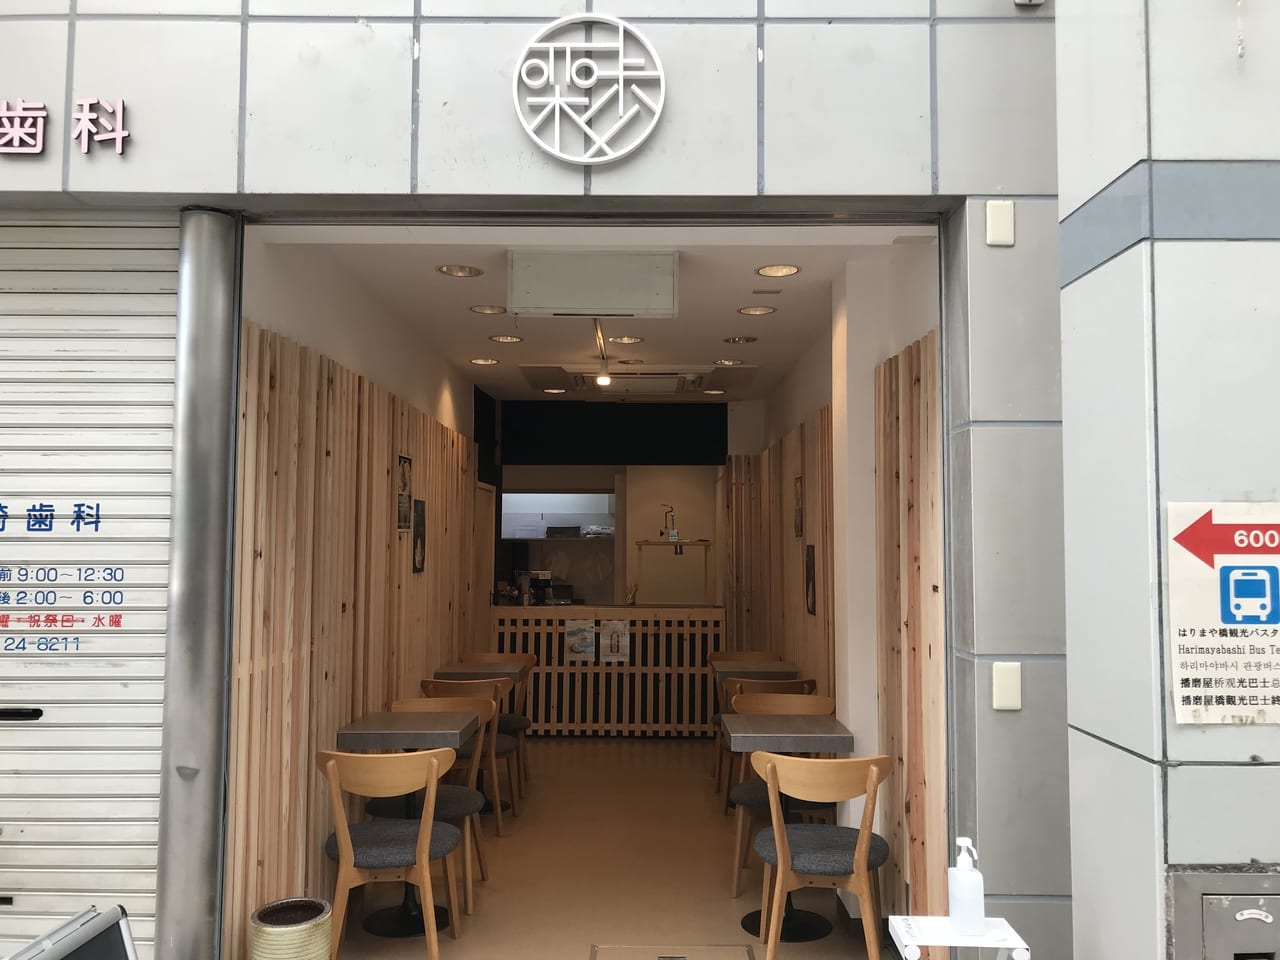 2021年6月「栗歩 高知店」が高知市新京町商店街内にオープン